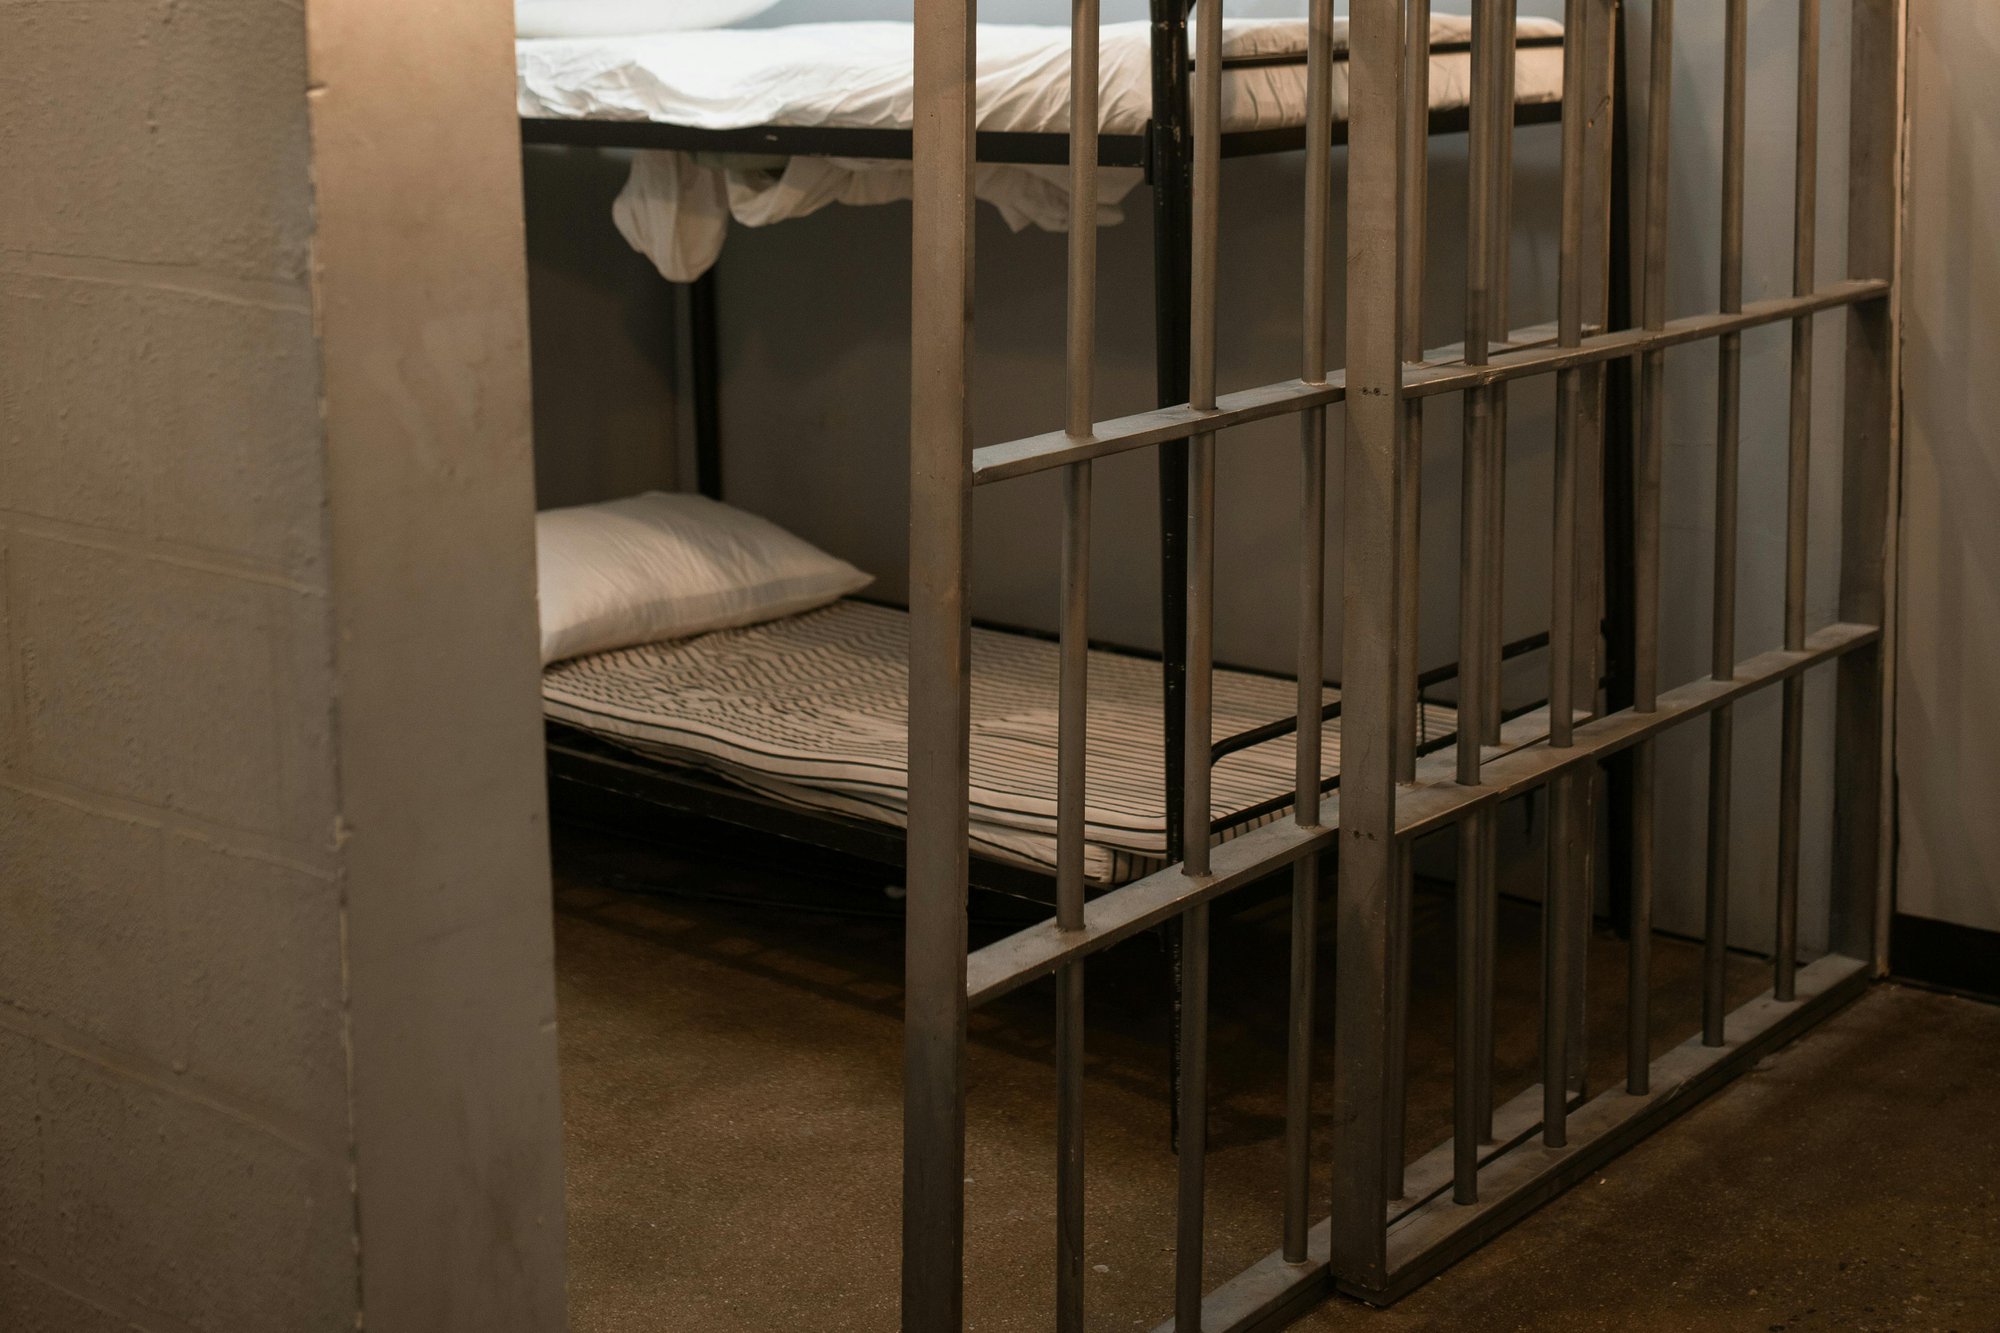 Te veel aanhoudingsbevelen: onderzoeksrechters medeverantwoordelijk voor overbevolking gevangenissen? cover